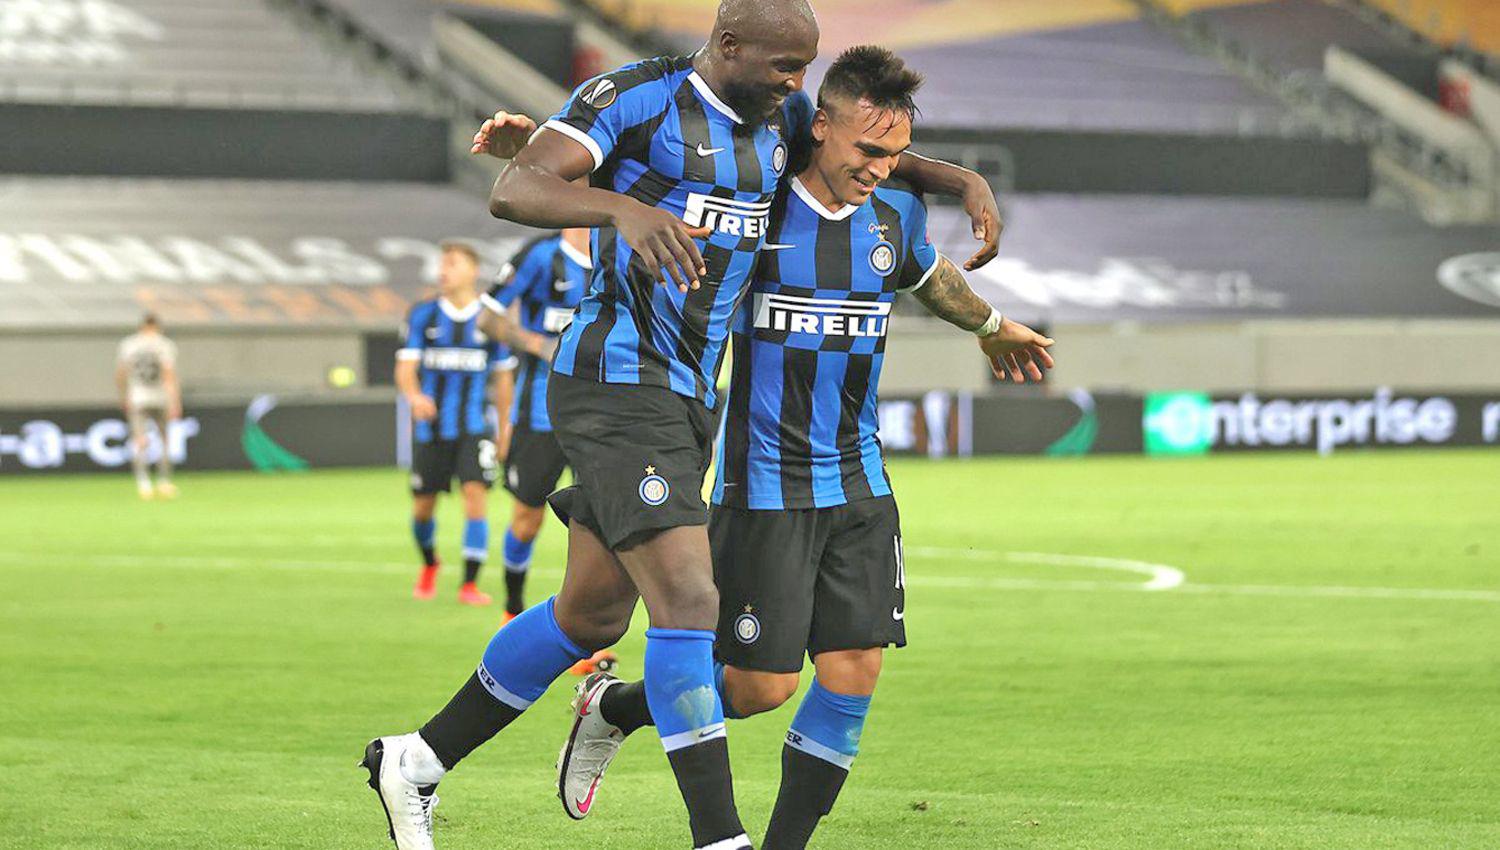 El claacutesico entre Inter y Milan acapara la atencioacutenLIGA DE ITALIA